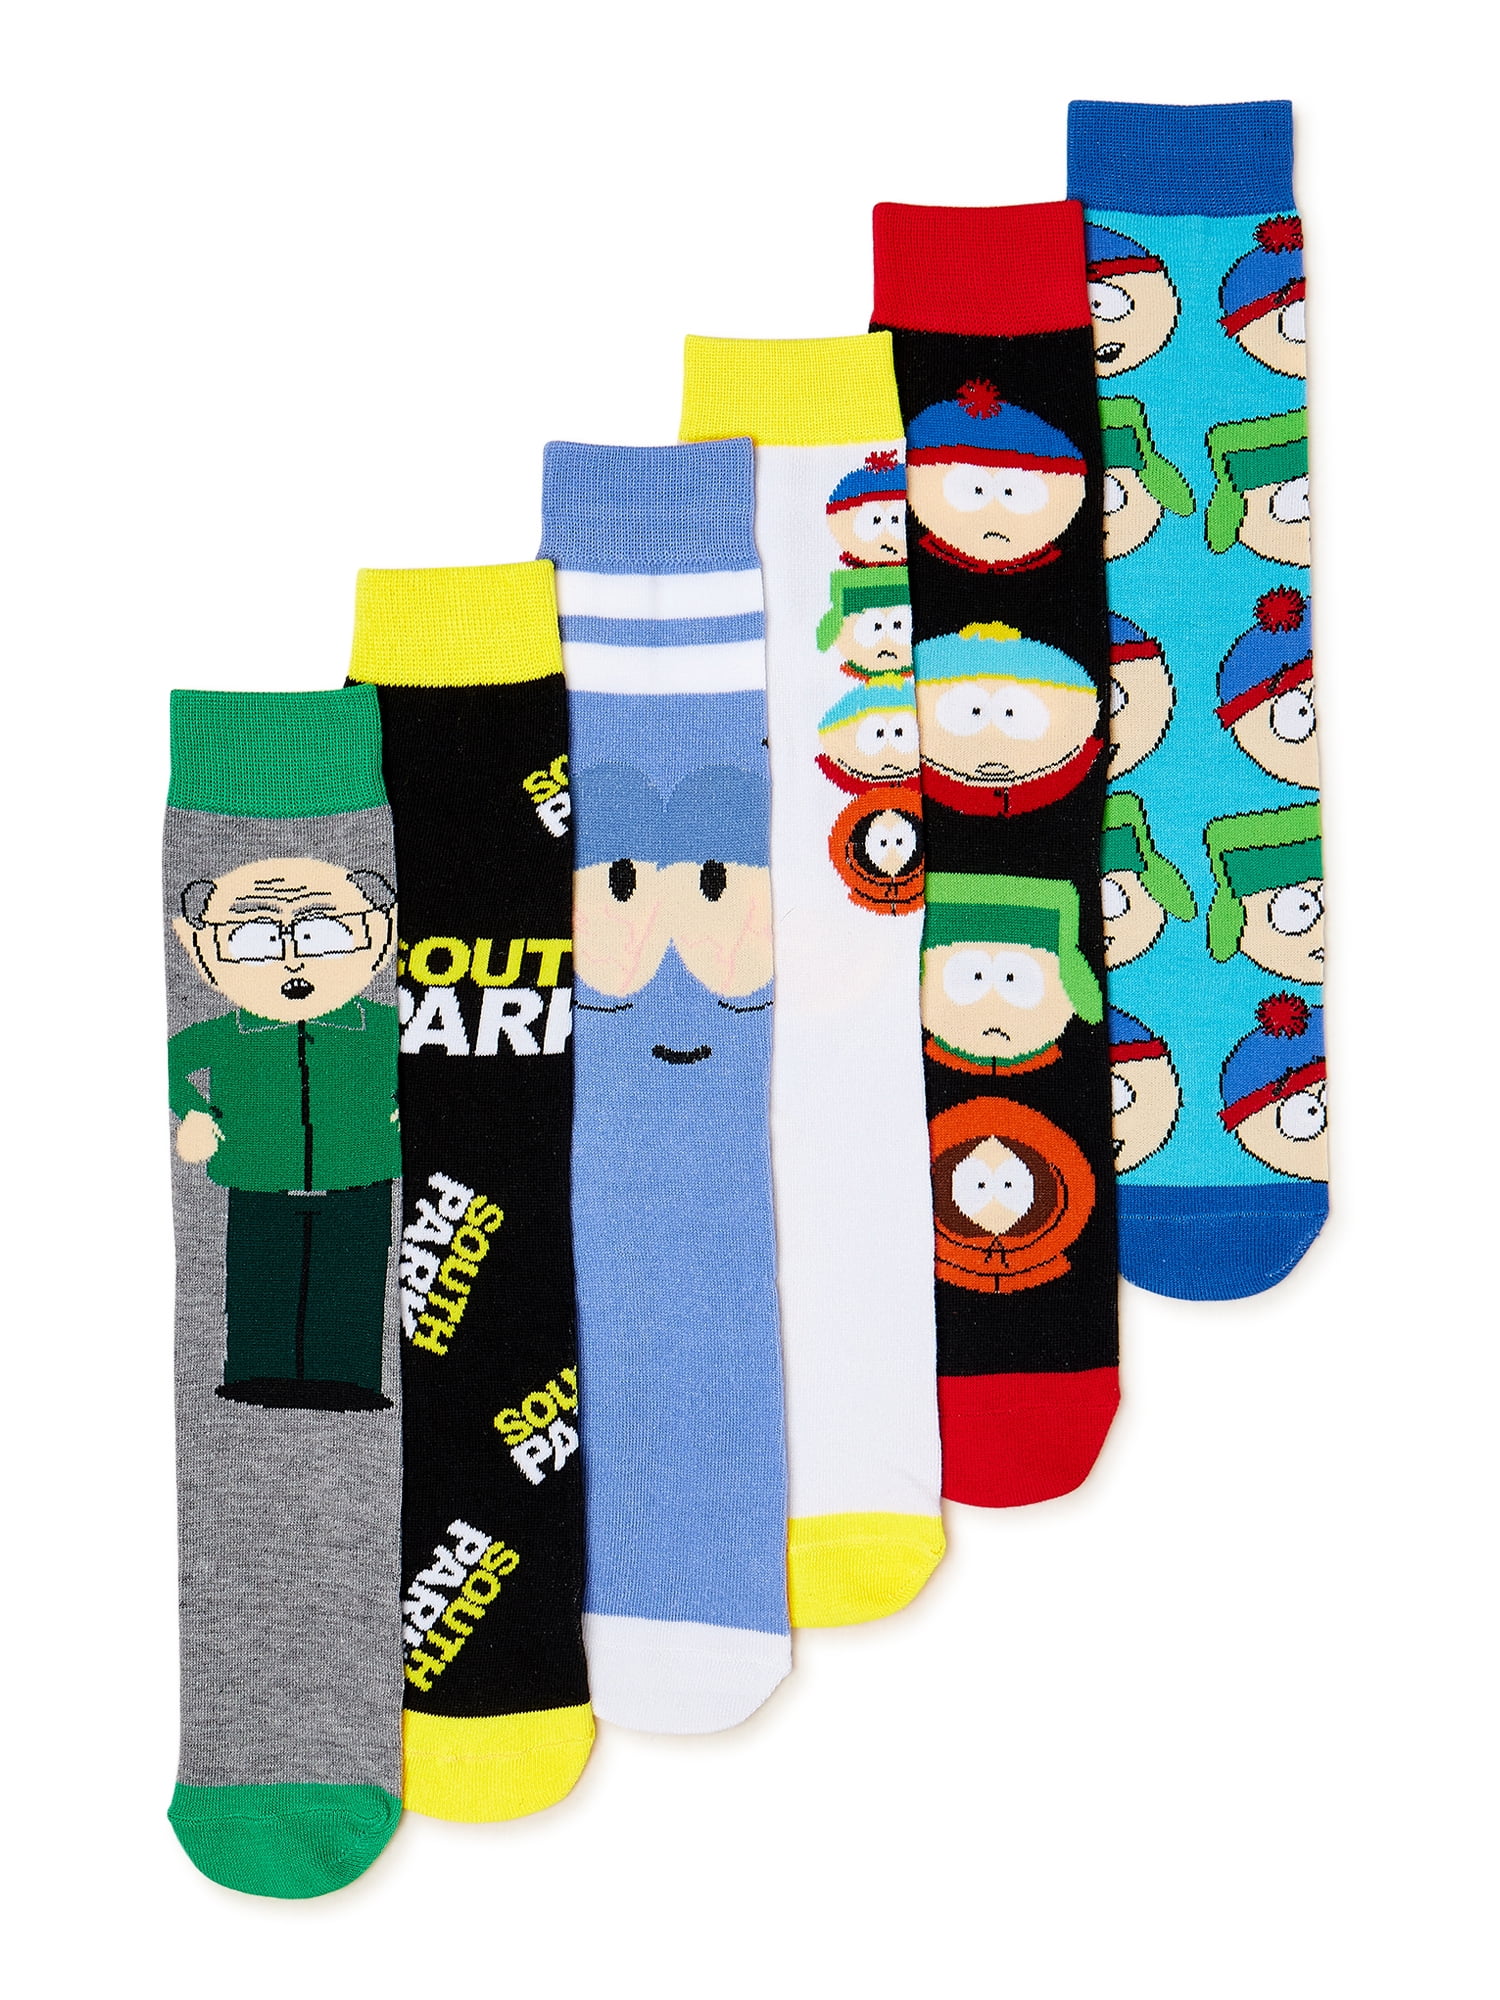 South Park Men's Crew Socks, 6-Pack